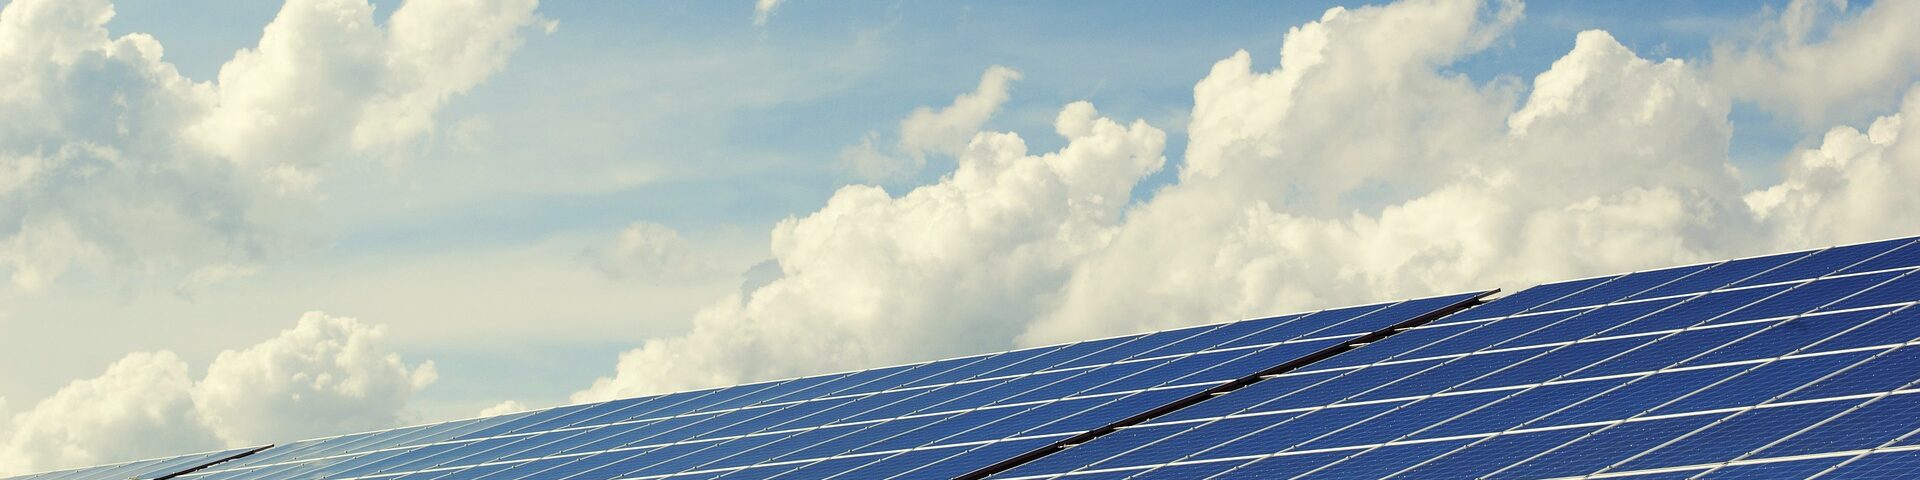 Gibt es eine Förderung von Stecker-Solargeräten in Mannheim?